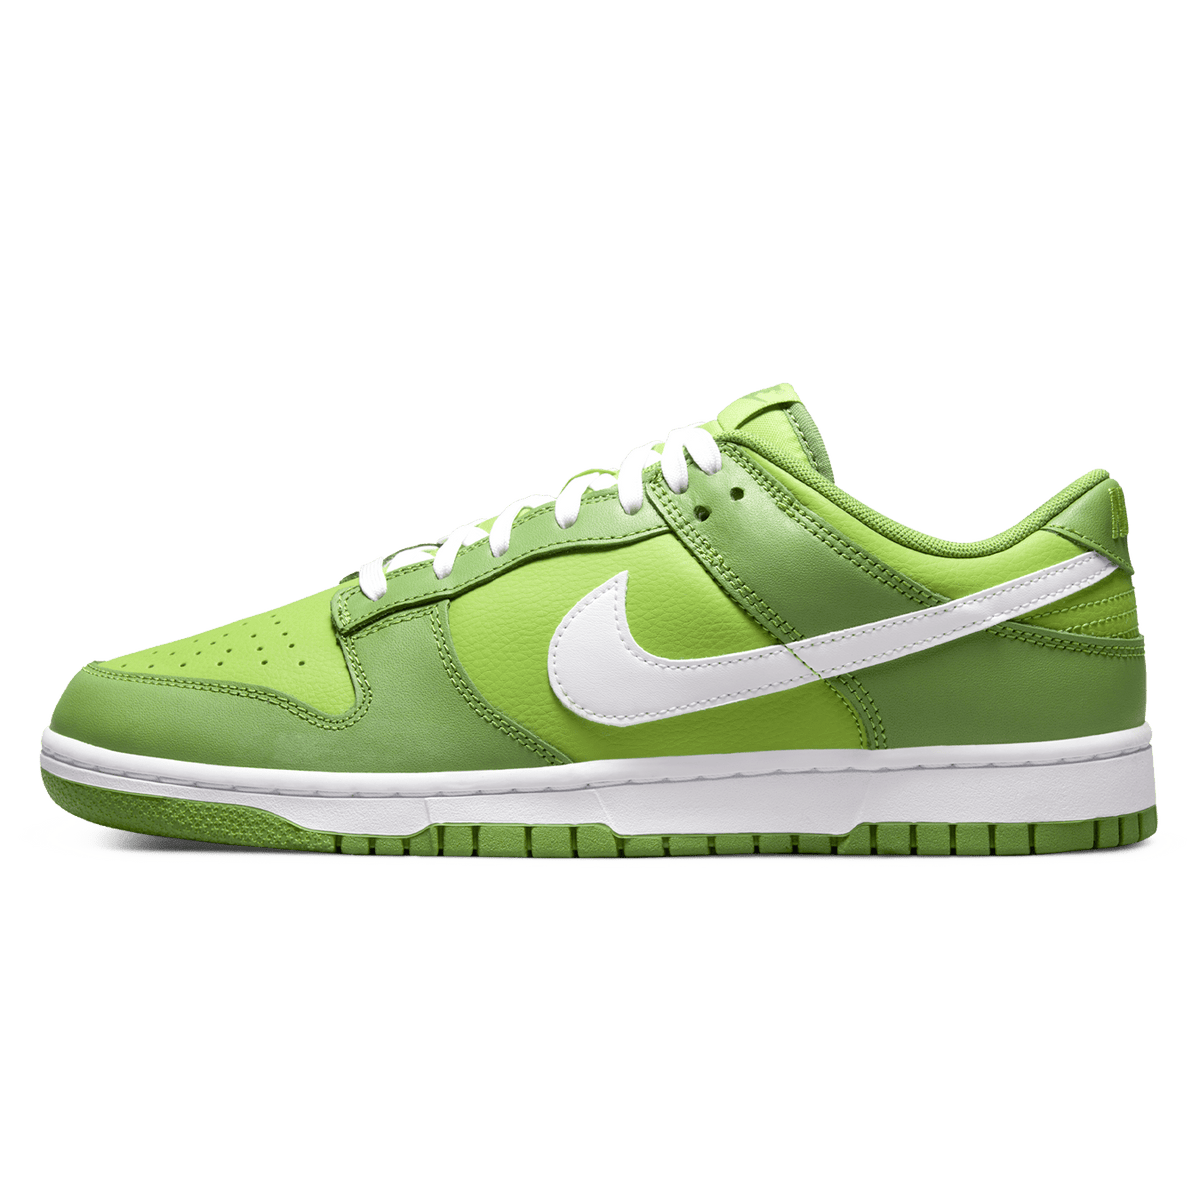 Nike Dunk Low 'Chlorophyll' - Kick Game